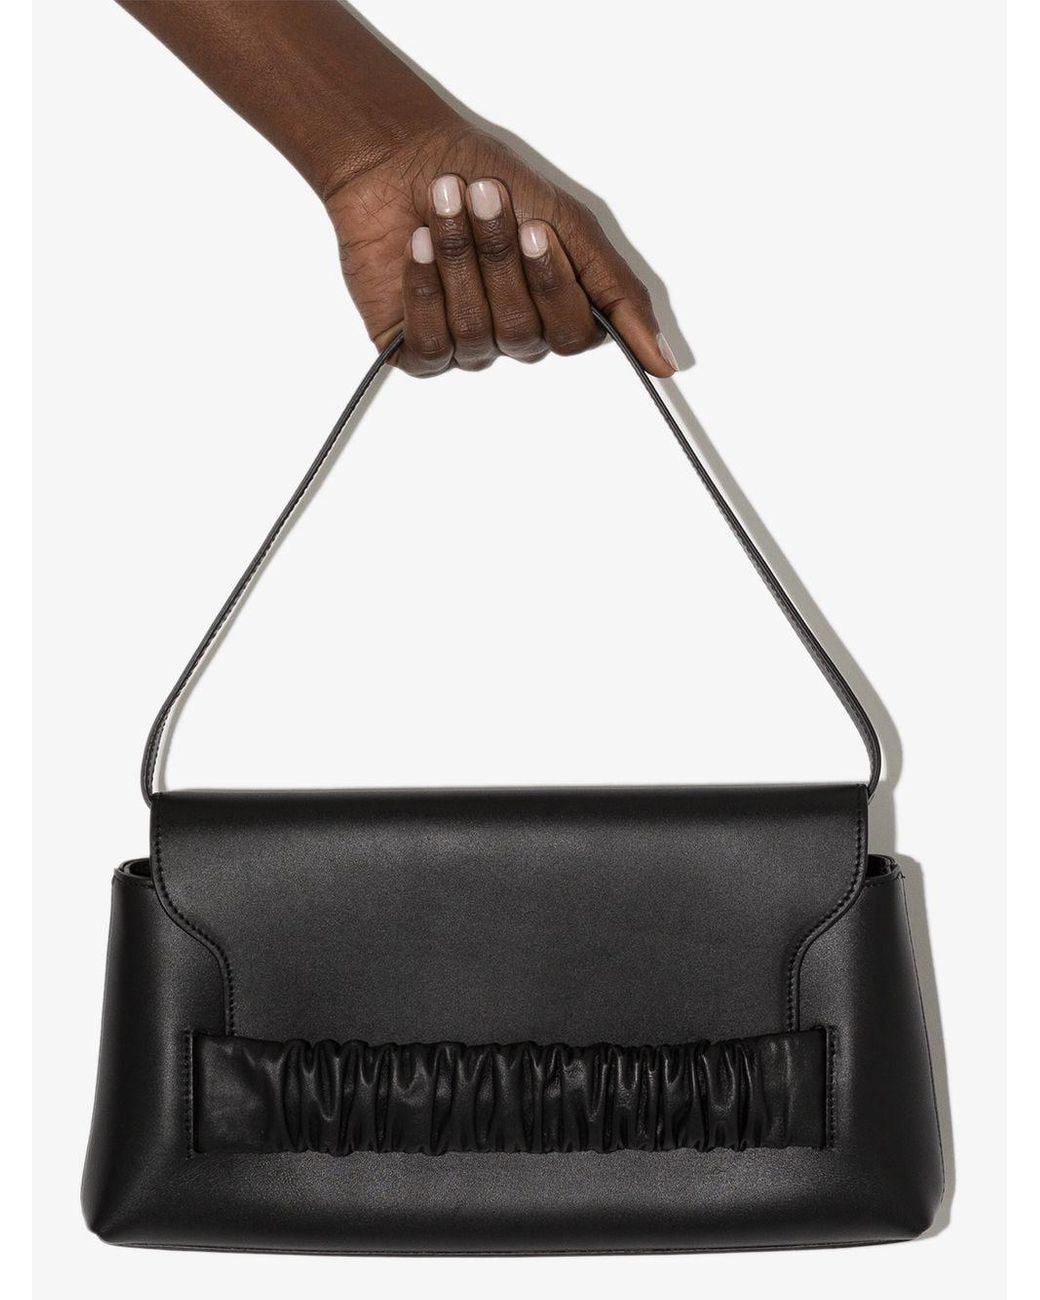 Elleme Leather Chouchou Baguette Shoulder Bag in Black - Lyst